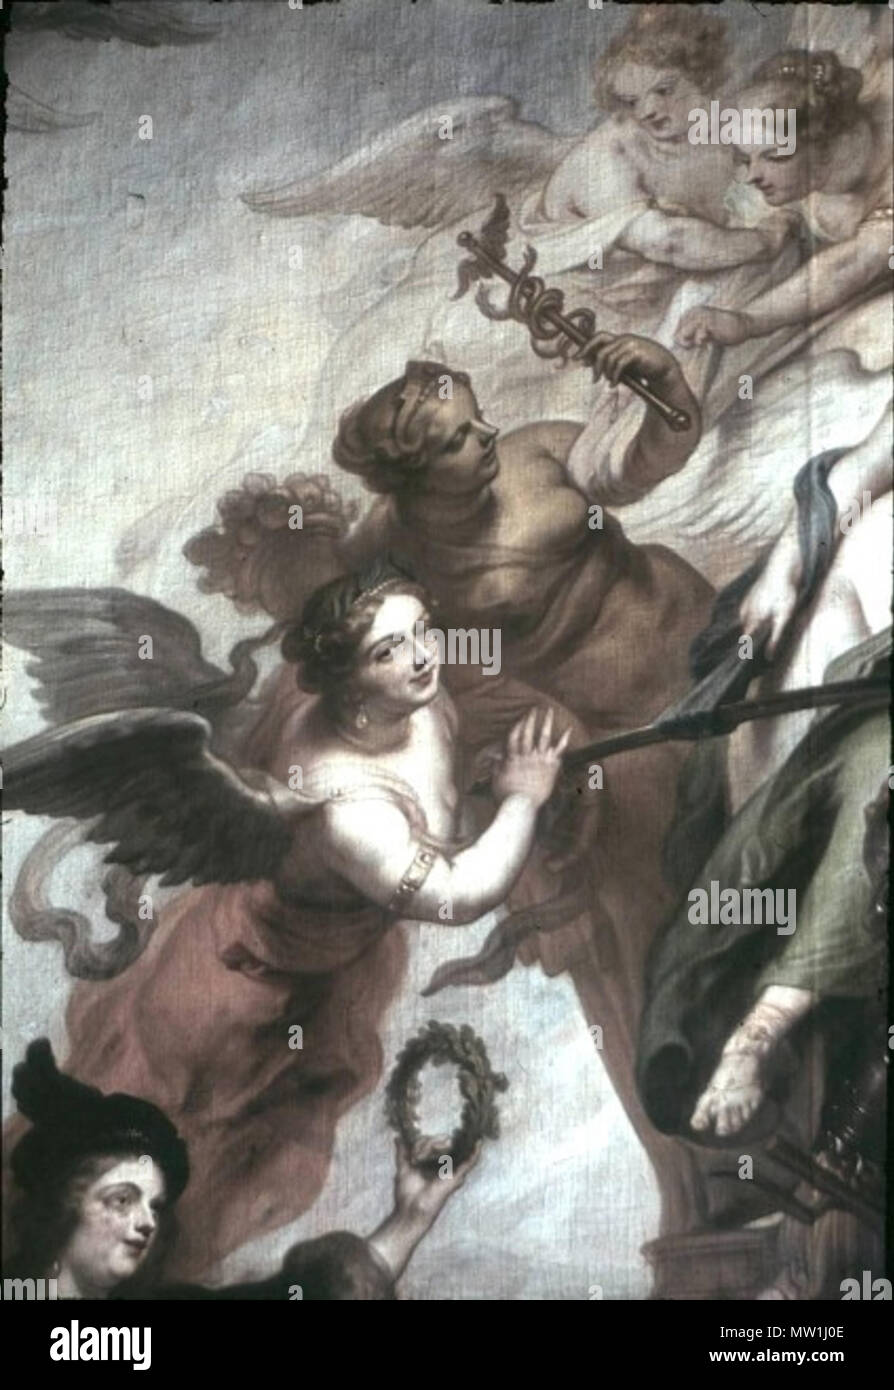 603 Theodoor van THULDEN (1606-1669), Allegorie auf den Frieden von Oliva, Grafik im Stadtschloss Potsdam (Marmorsaal), Ausschnitt Fliegende weibliche Allegorien links neben dem Kurfürsten Stockfoto